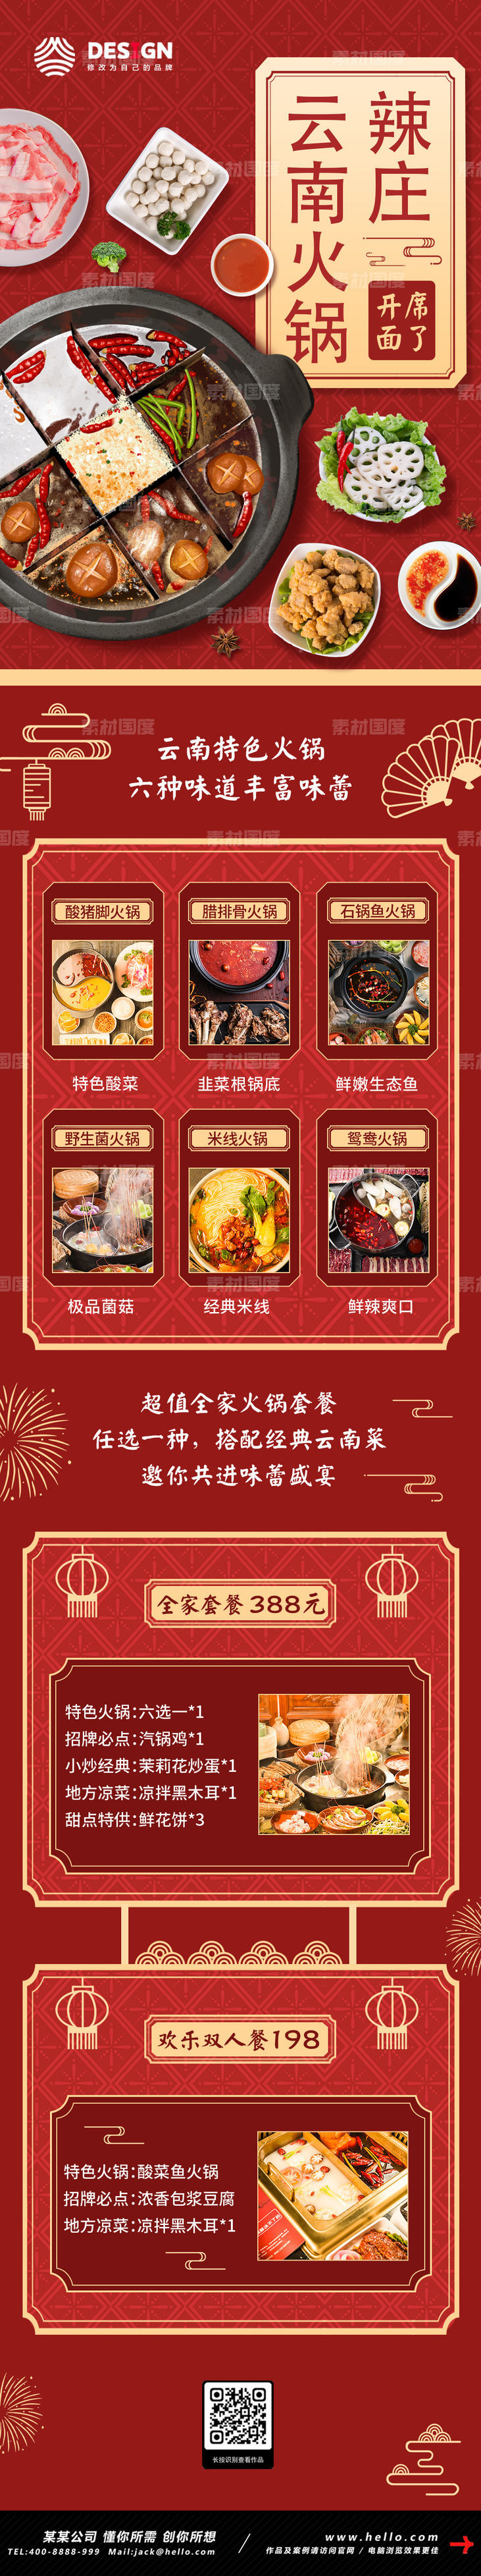 餐饮 美食 火锅 菜单 促销 长图 海报